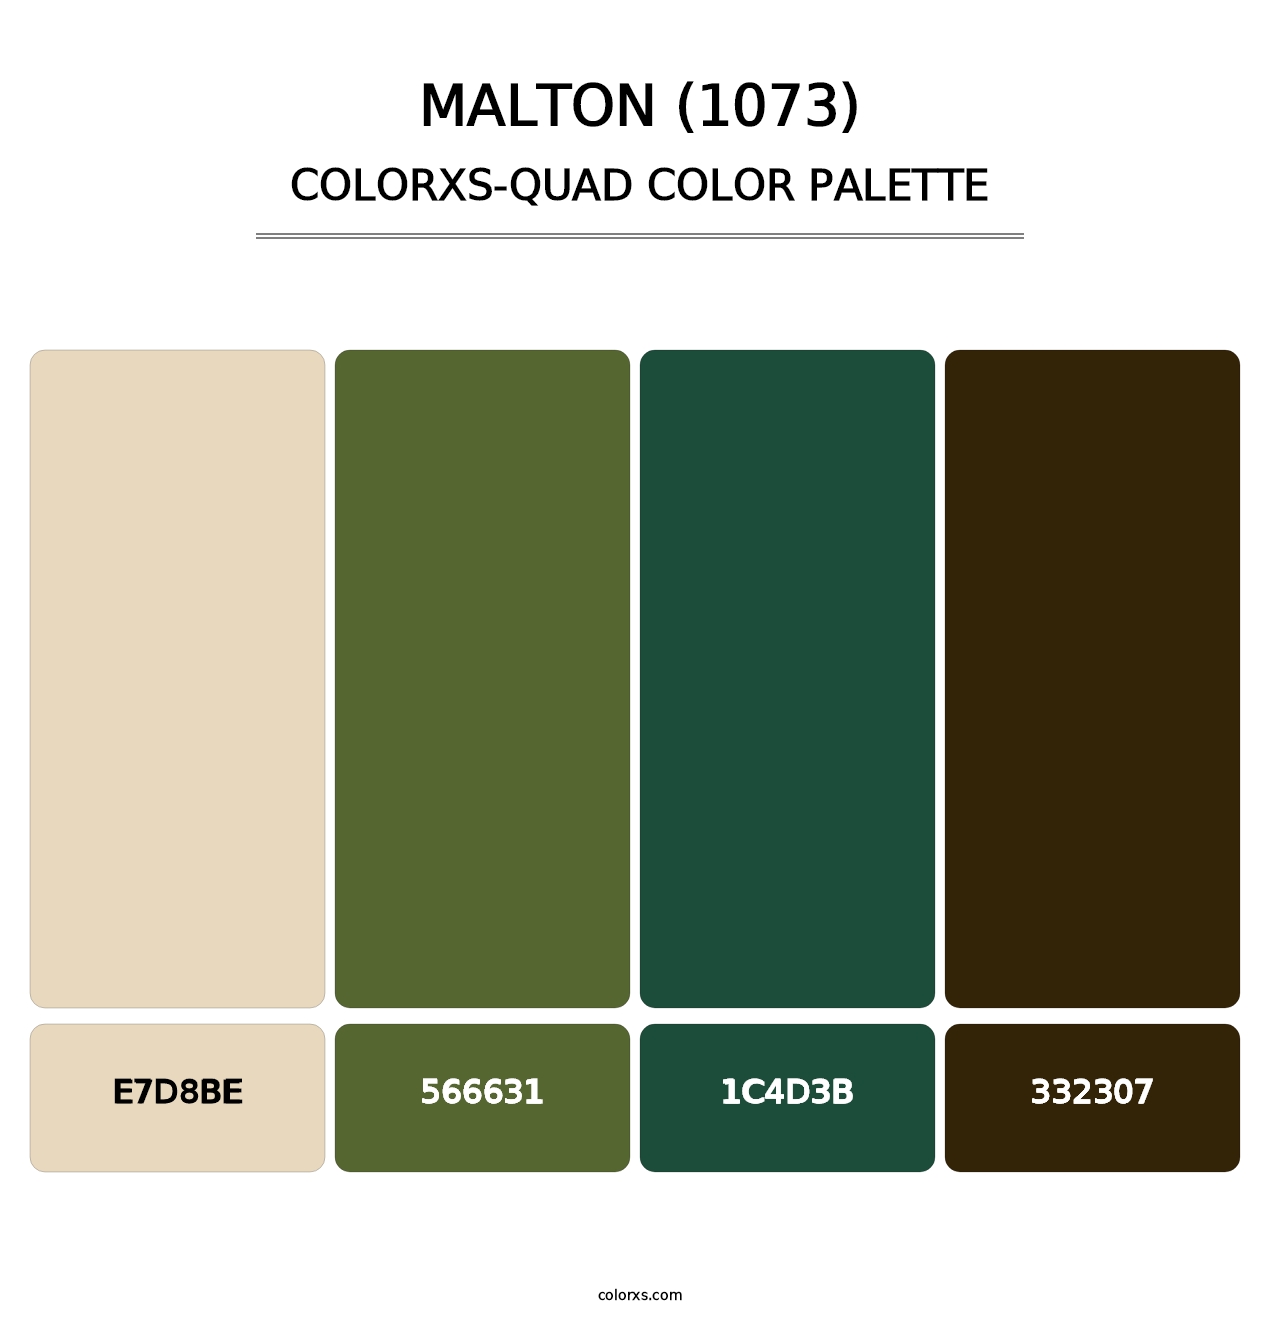 Malton (1073) - Colorxs Quad Palette